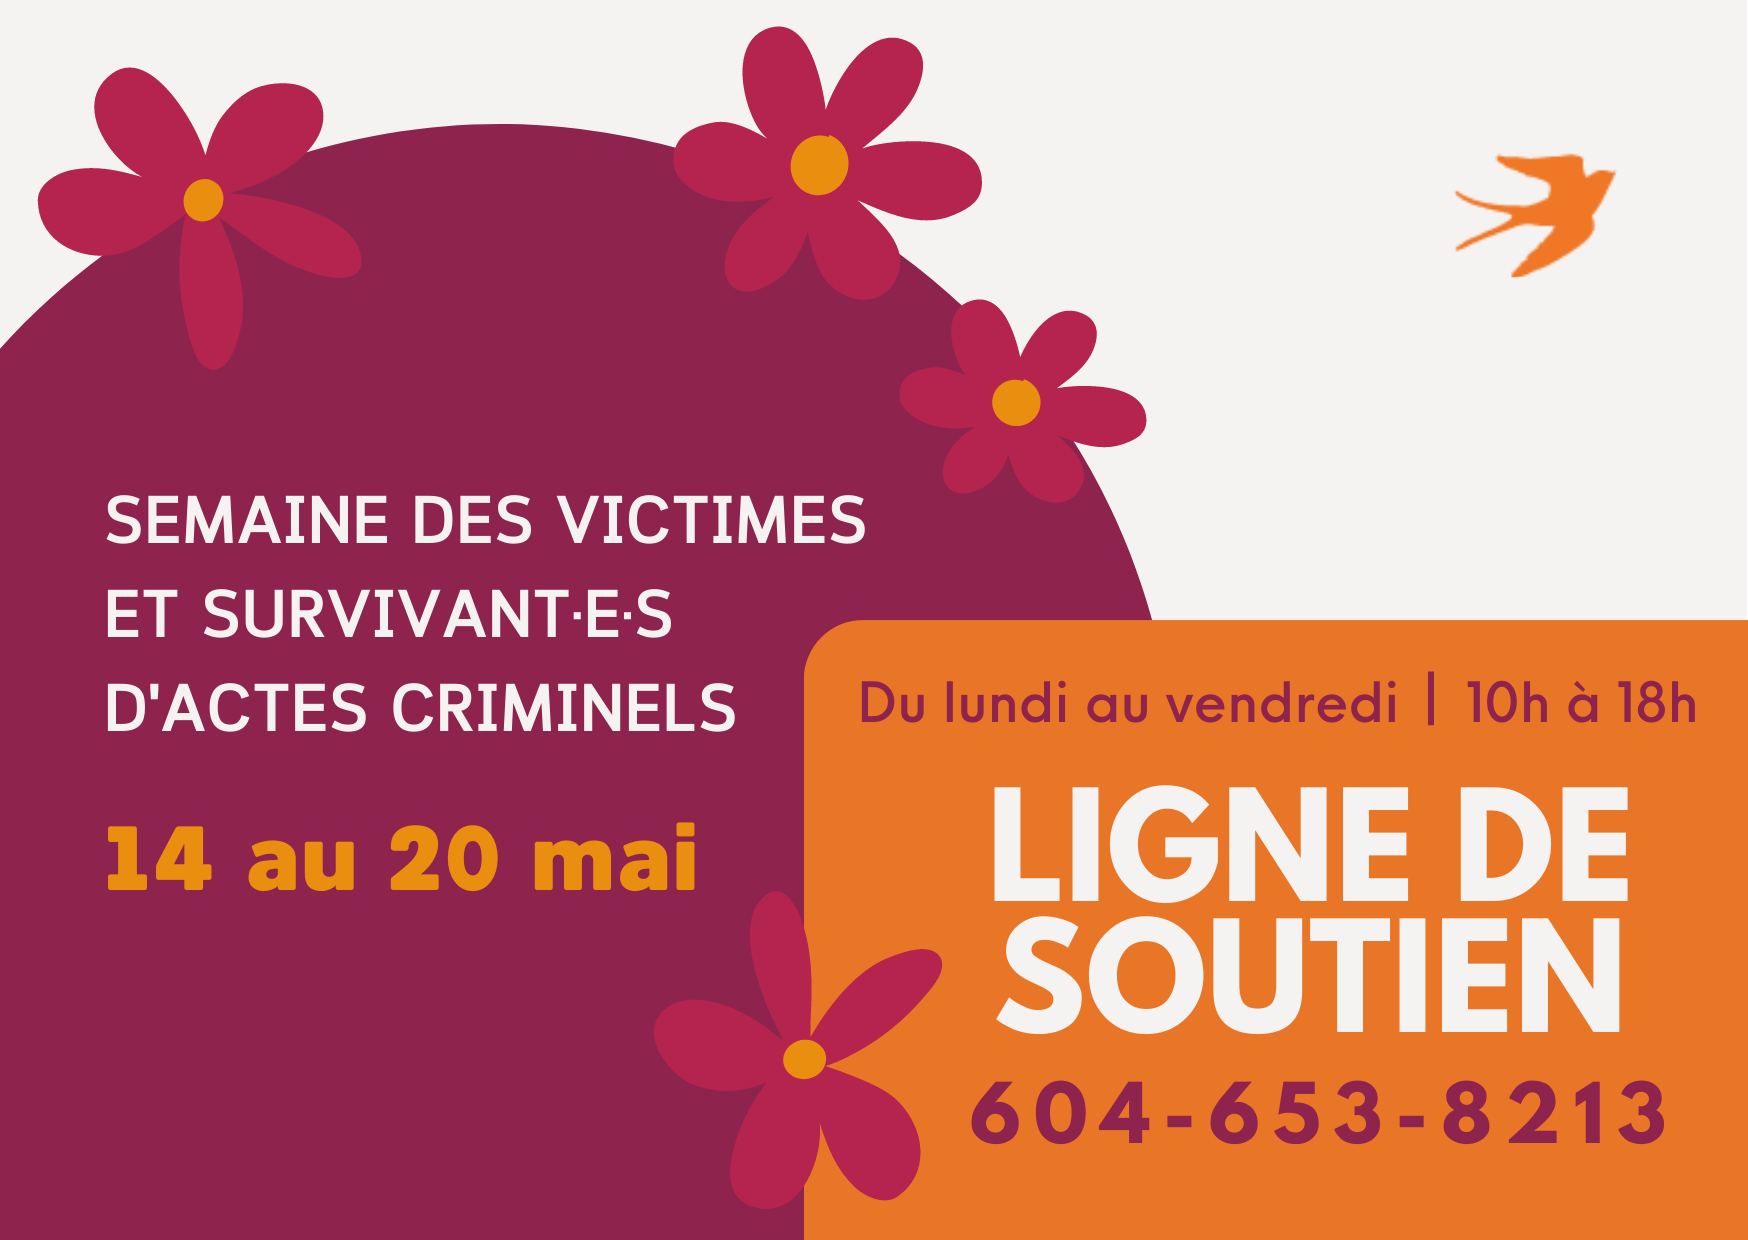 Semaine des victimes et survivant·e·s d'actes criminels - 14 au 20 mai